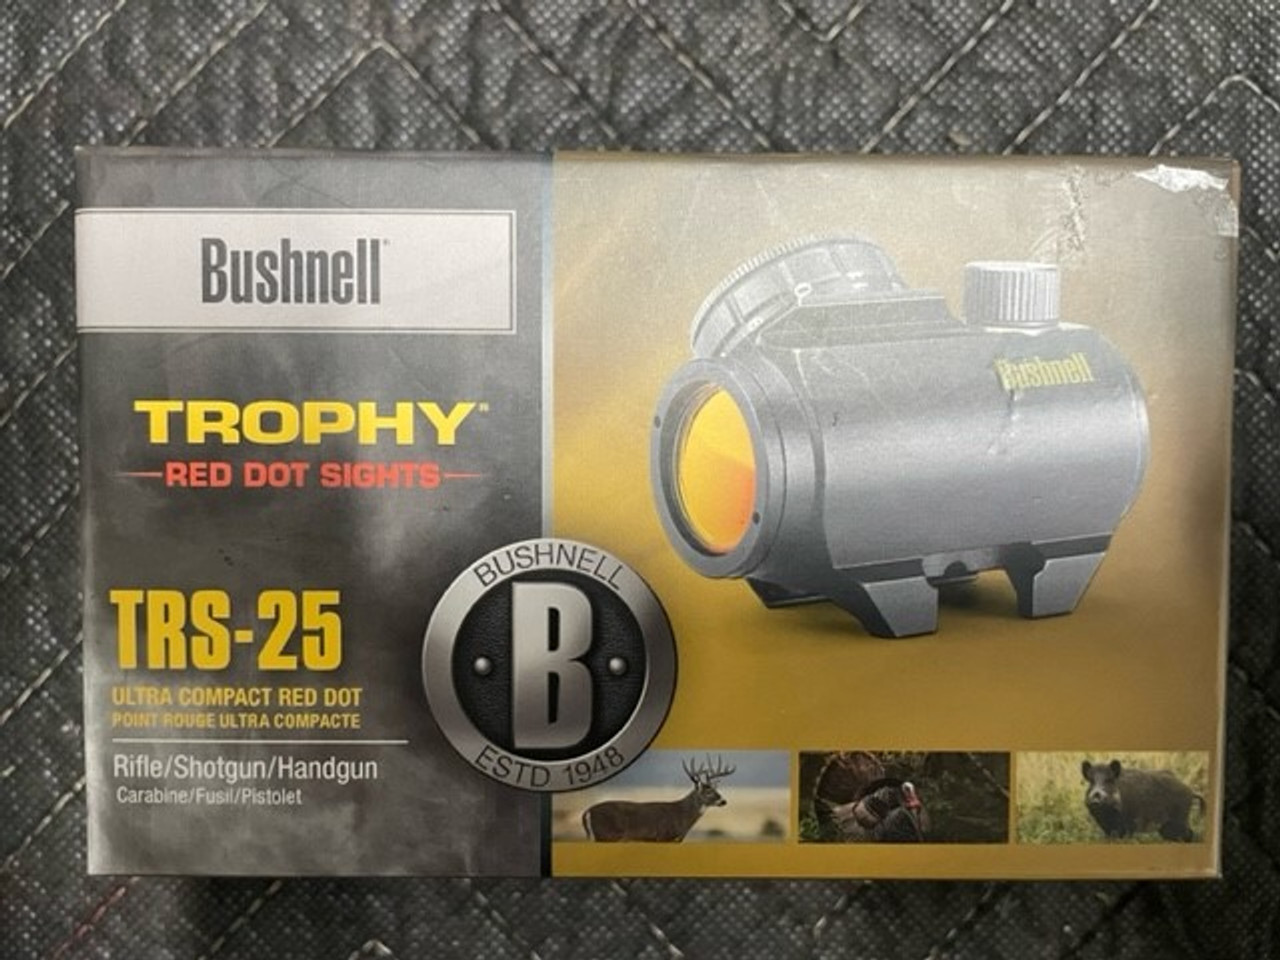 Used Bushnell Trophy TRS-25 Red Dot